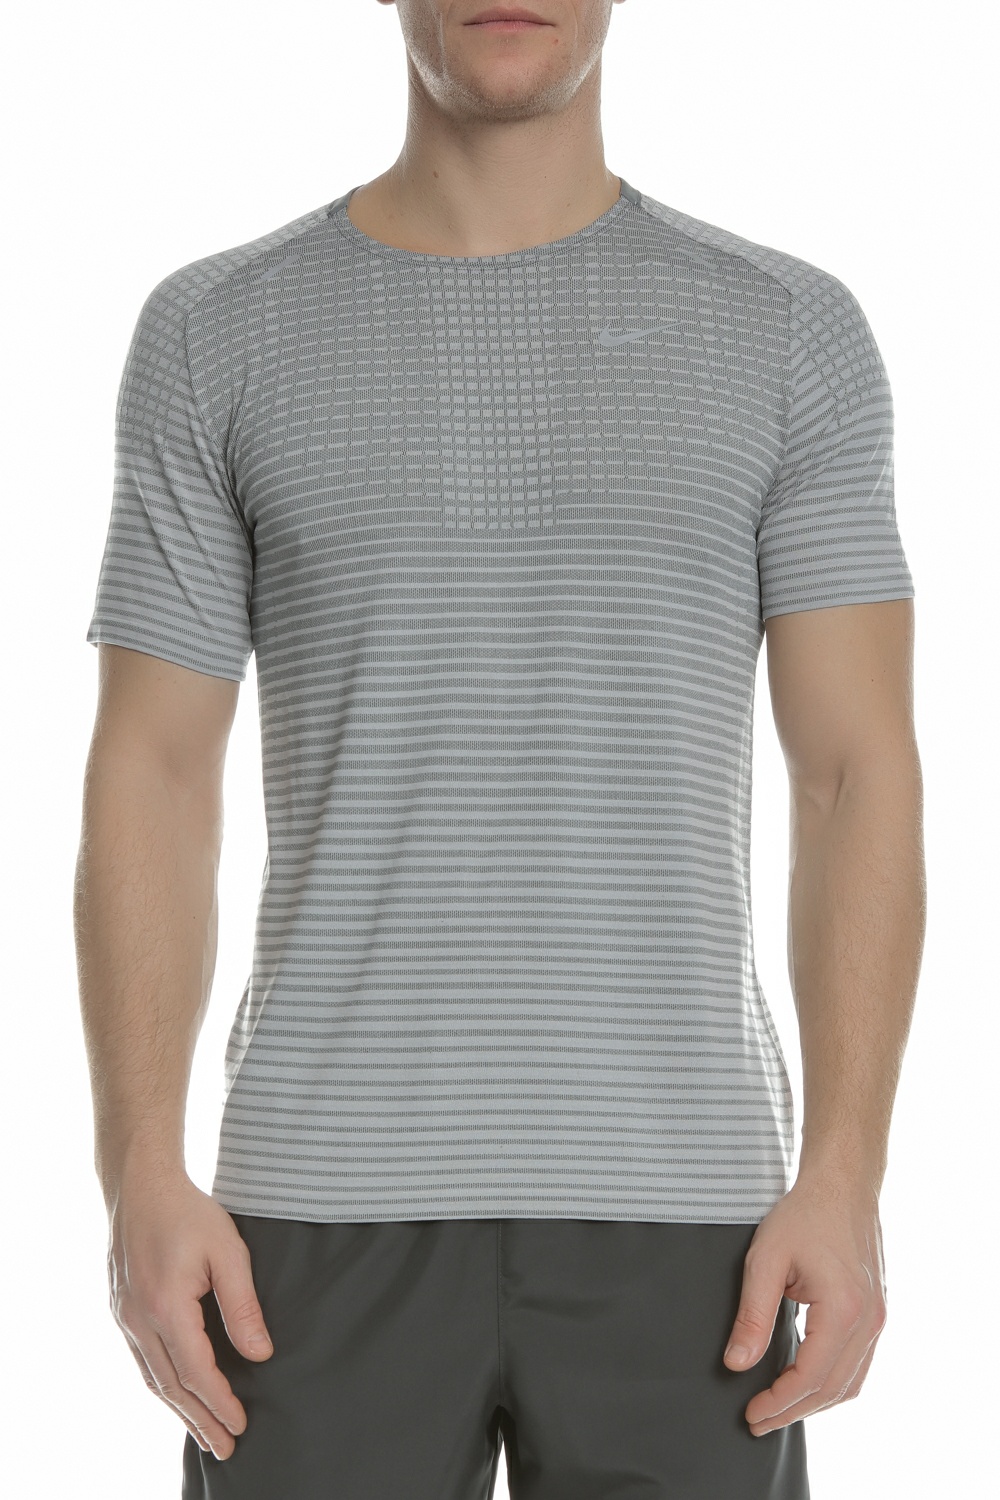 Ανδρικά/Ρούχα/Αθλητικά/T-shirt NIKE - Ανδρική μπλούζα NIKE TECHKNIT ULTRA γκρι